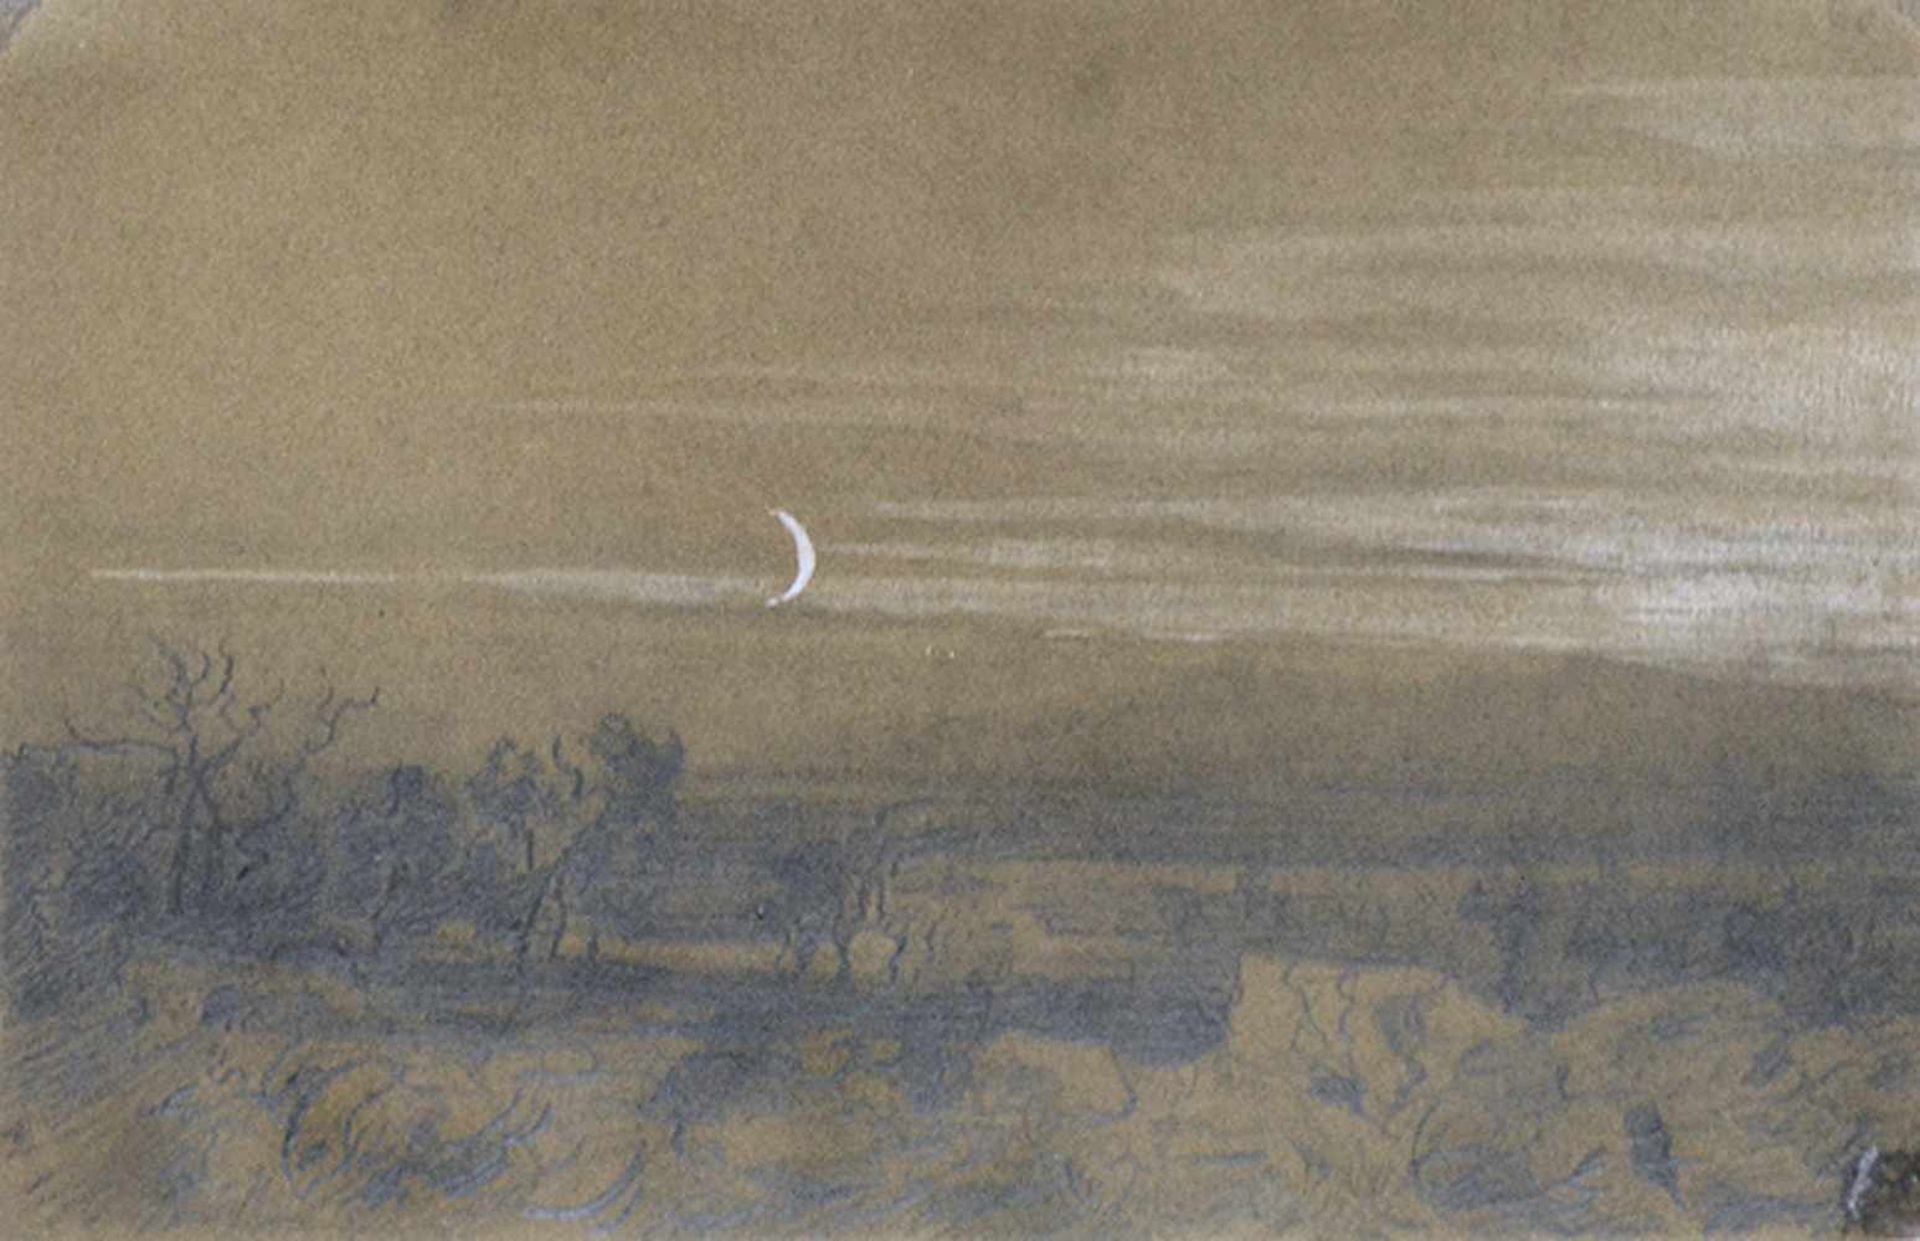 HEINRICH FUNK Herford 1807 - 1877 StuttgartNächtliche Landschaft mit Mondsichel. Stellenweise in